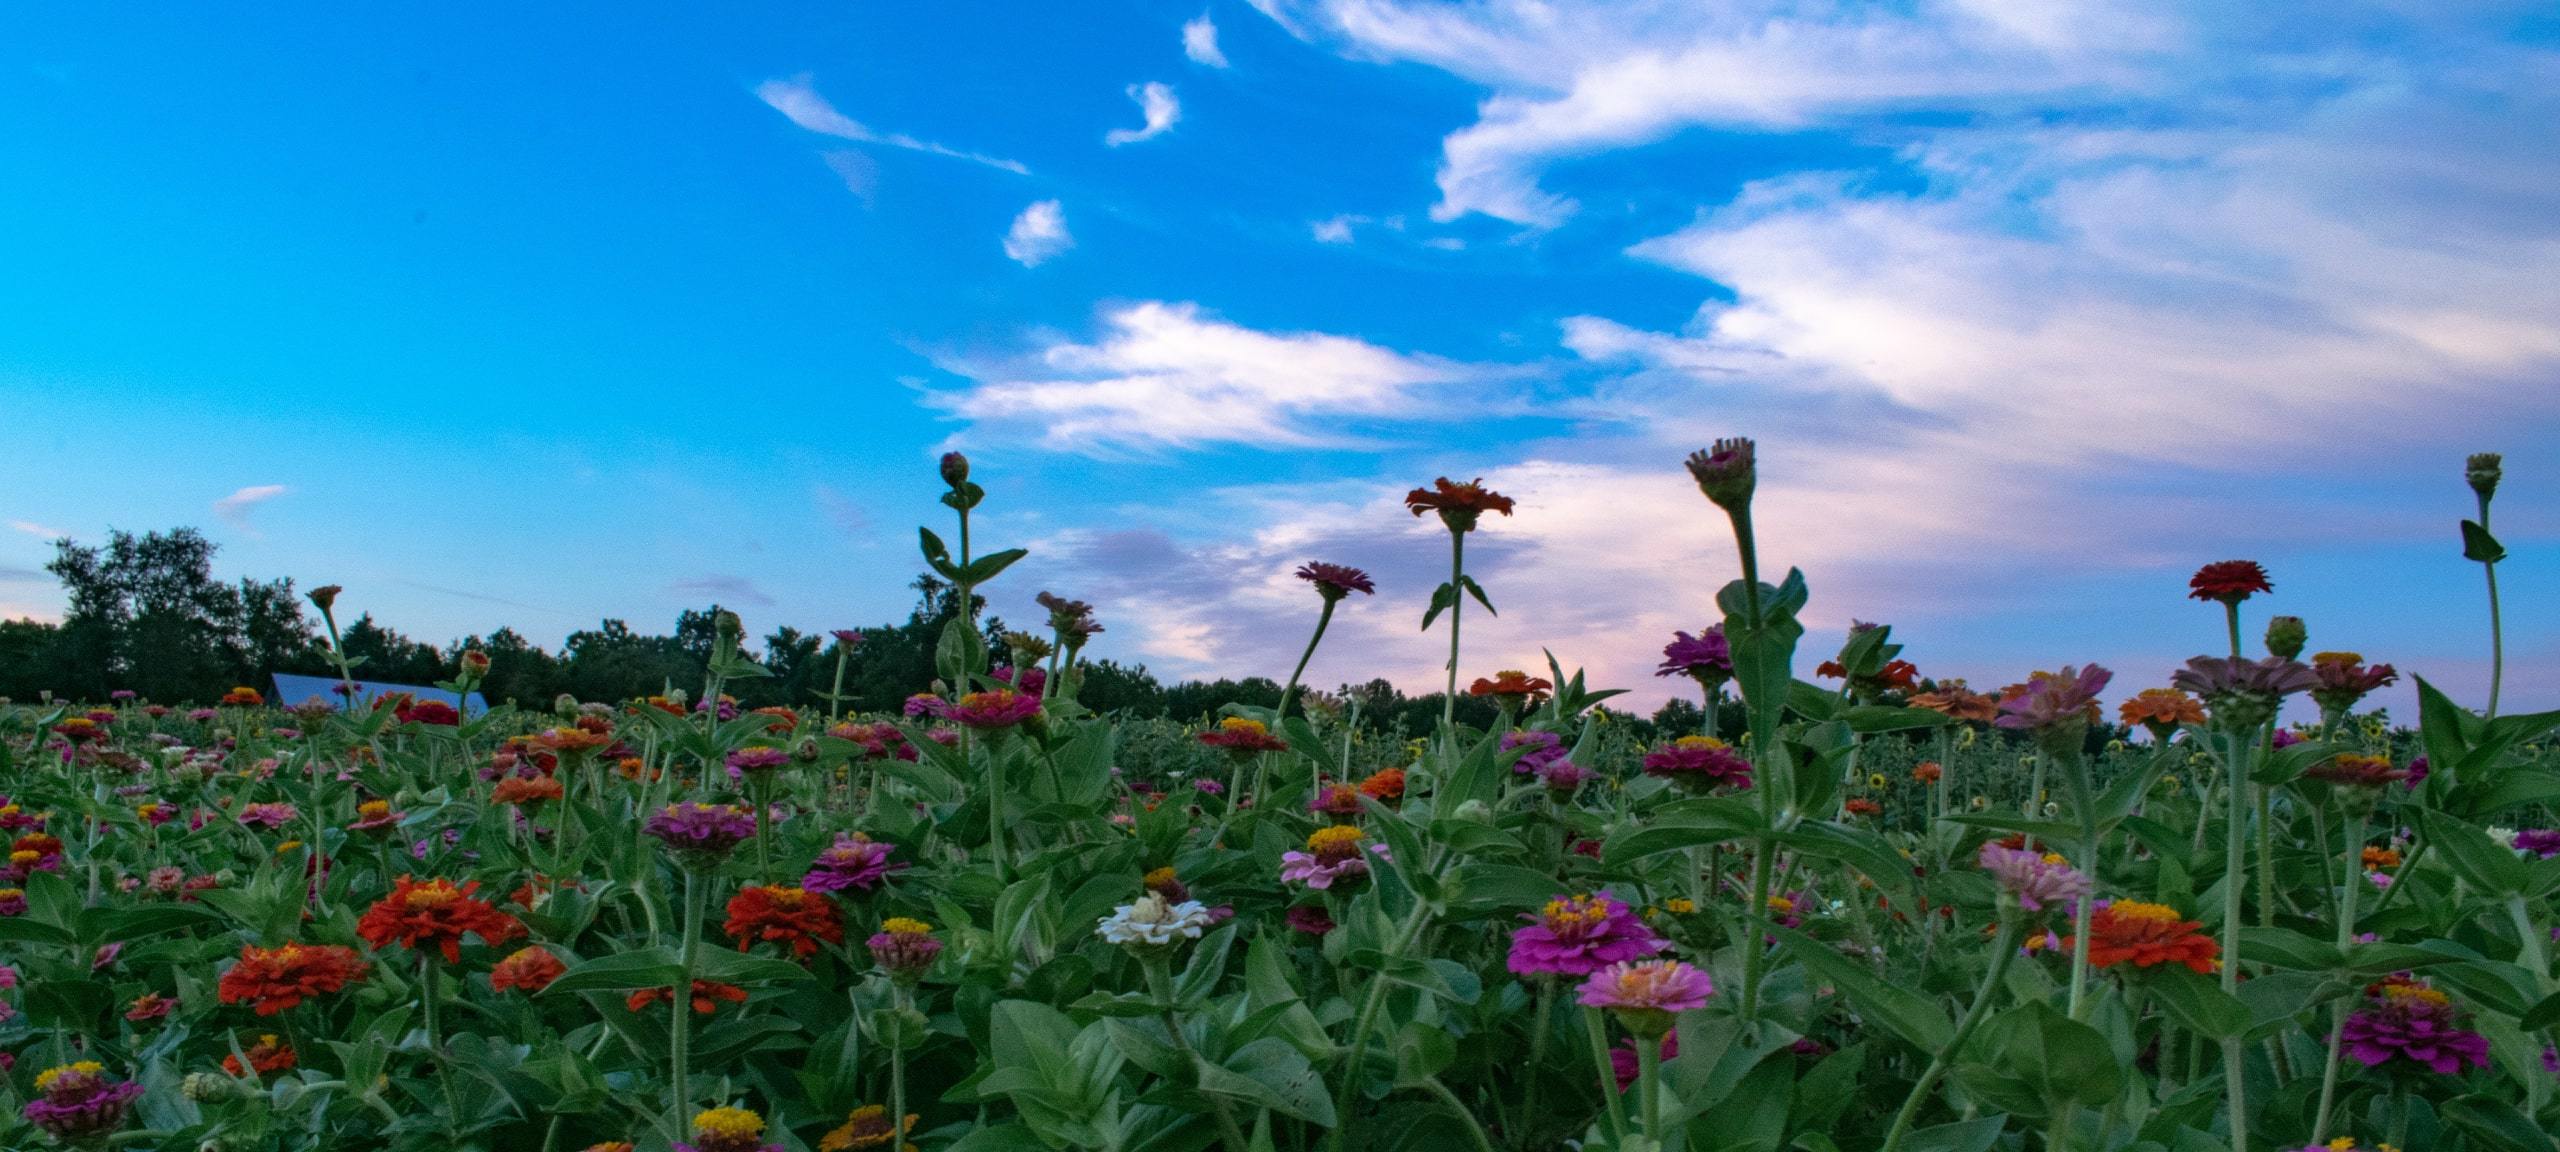 Flower fields in rural Howard County, Maryland